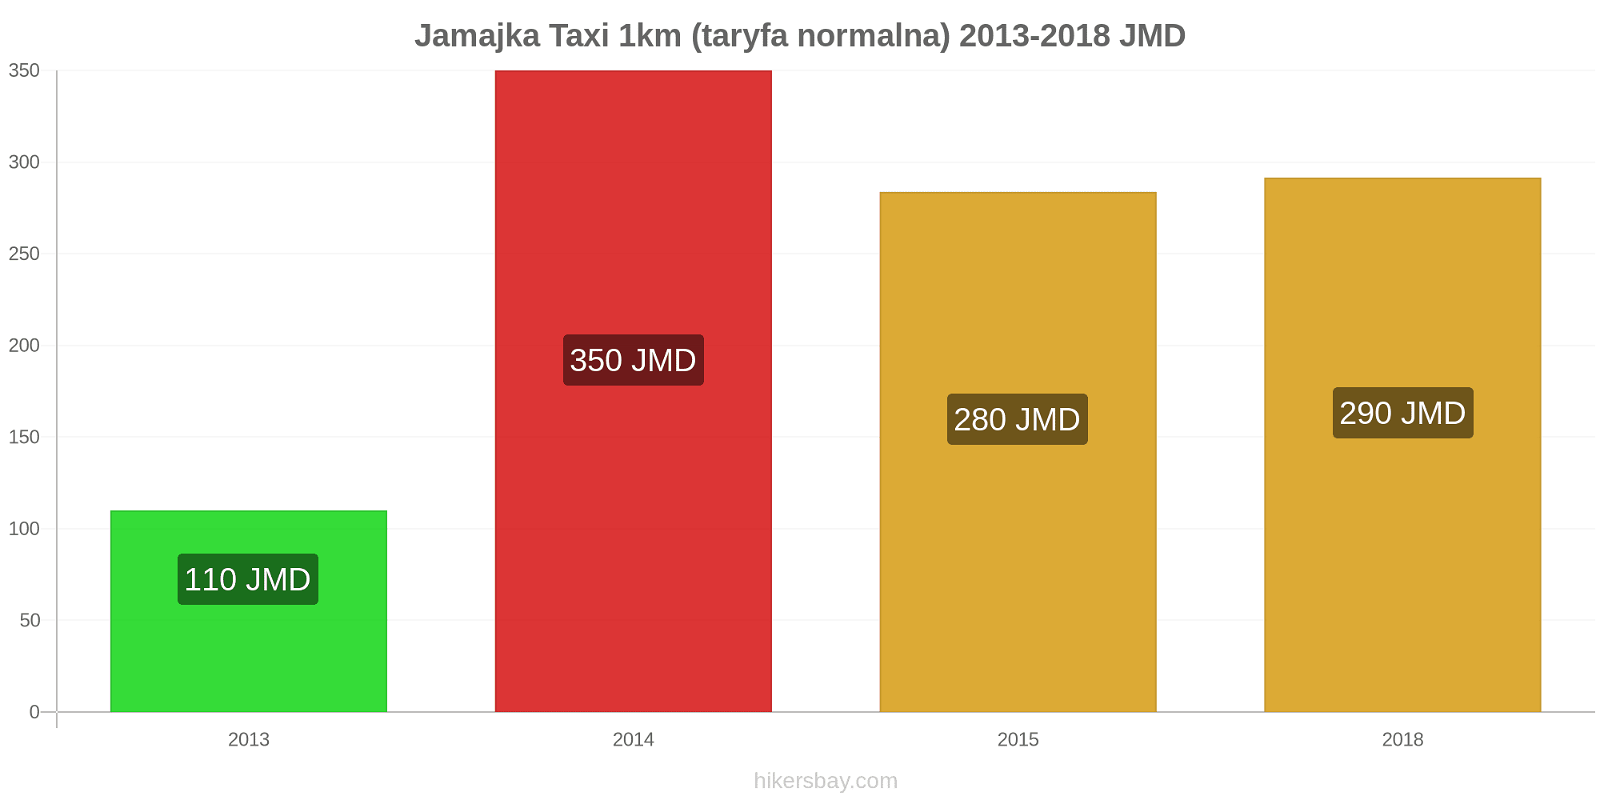 Jamajka zmiany cen Taxi 1km (taryfa normalna) hikersbay.com